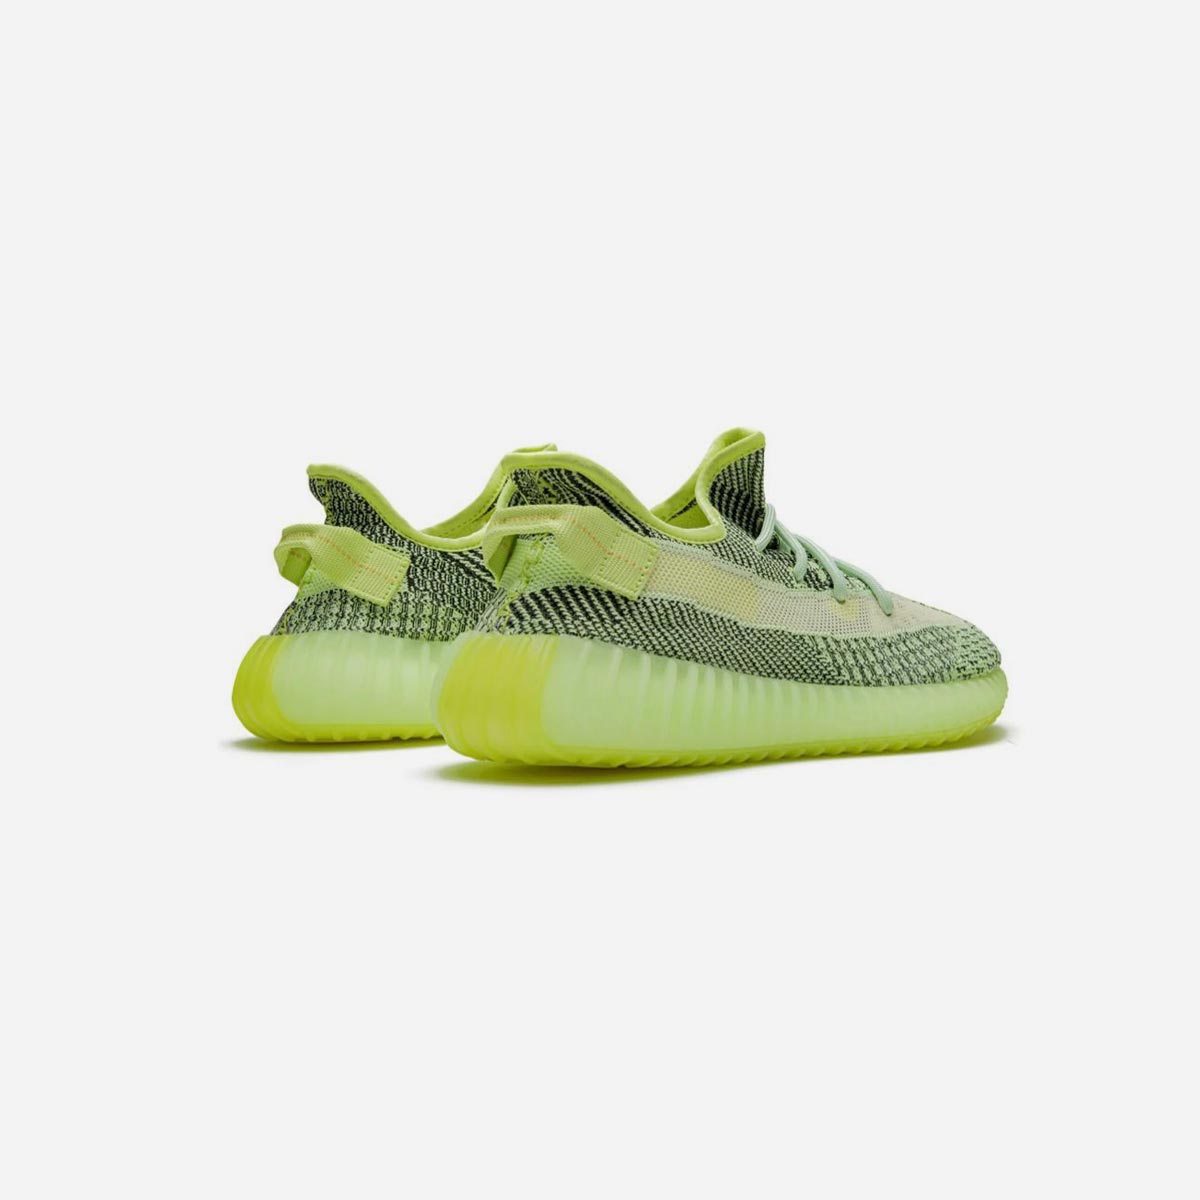 Adidas Yeezy Boost 350 V2 Yeezreel Reflective – Sneakers R Us